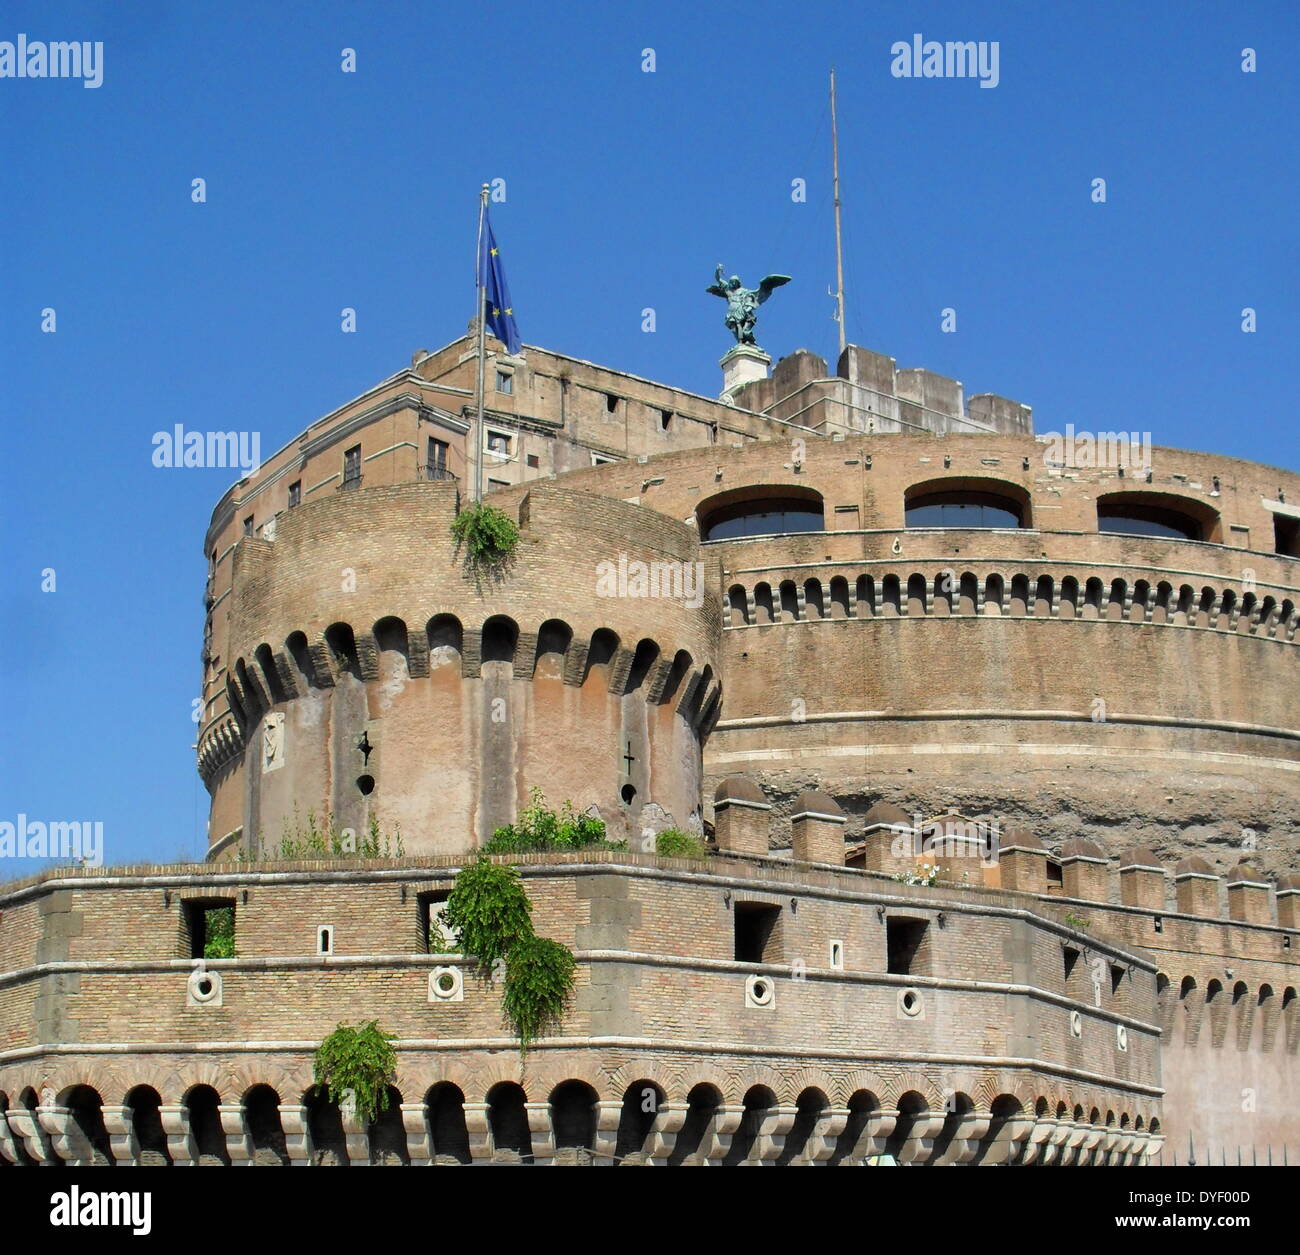 Das Castel Sant'Angelo ist ein hohes, zylindrische Gebäude im Parco Adriano, Rom, Italien. Es ursprünglich als mausoleum von Römischen Kaiser Hadrian in Auftrag gegeben wurde. Das Castel war einst das höchste Gebäude in Rom, und ist heute als Museum genutzt. Circa 2. Stockfoto